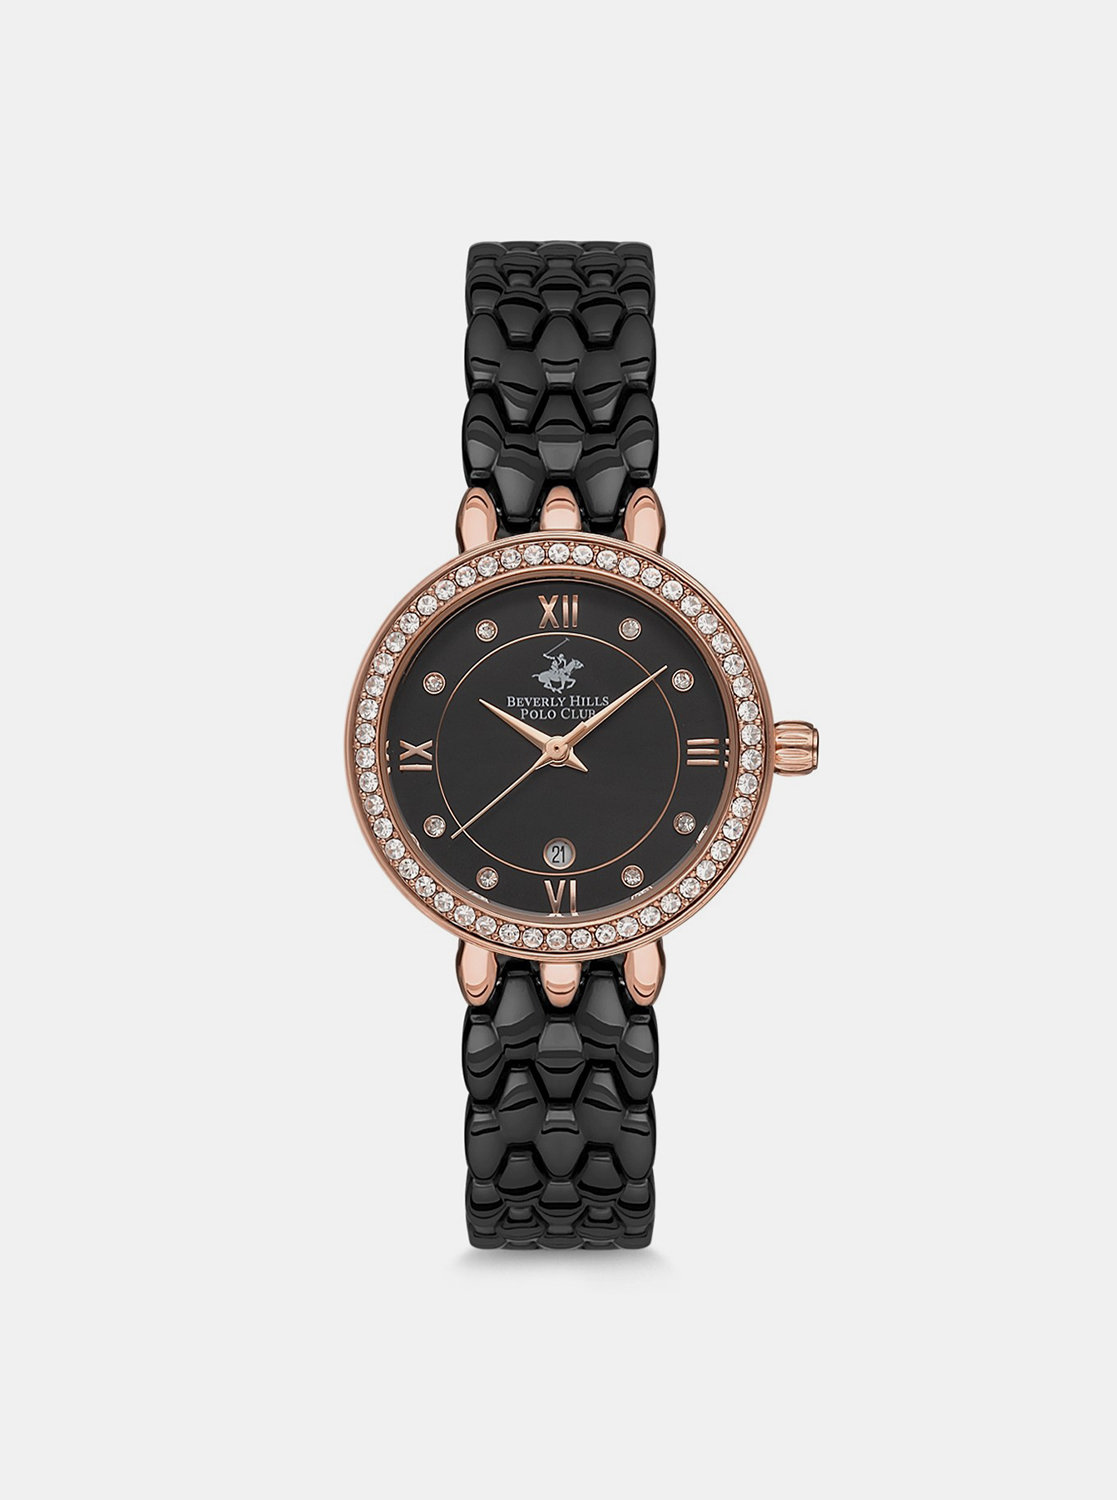 Dámské hodinky s nerezovým páskem v černé barvě Beverly Hills Polo Club